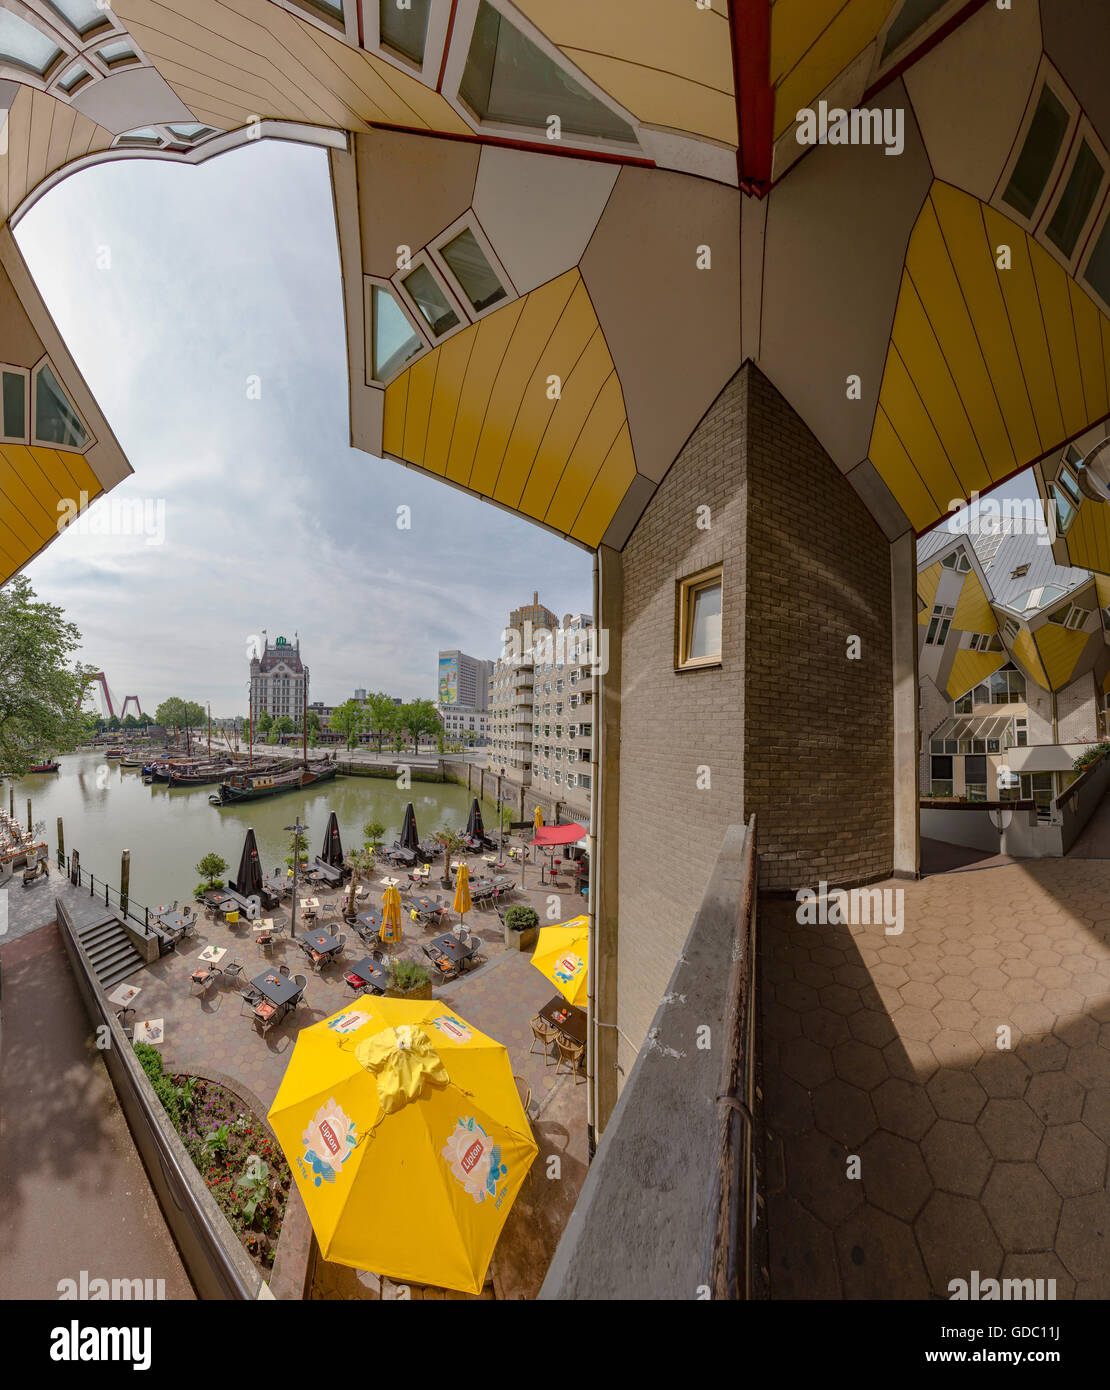 Rotterdam, Cube Häuser, alten Hafen, weißes Haus, William-Brücke Stockfoto